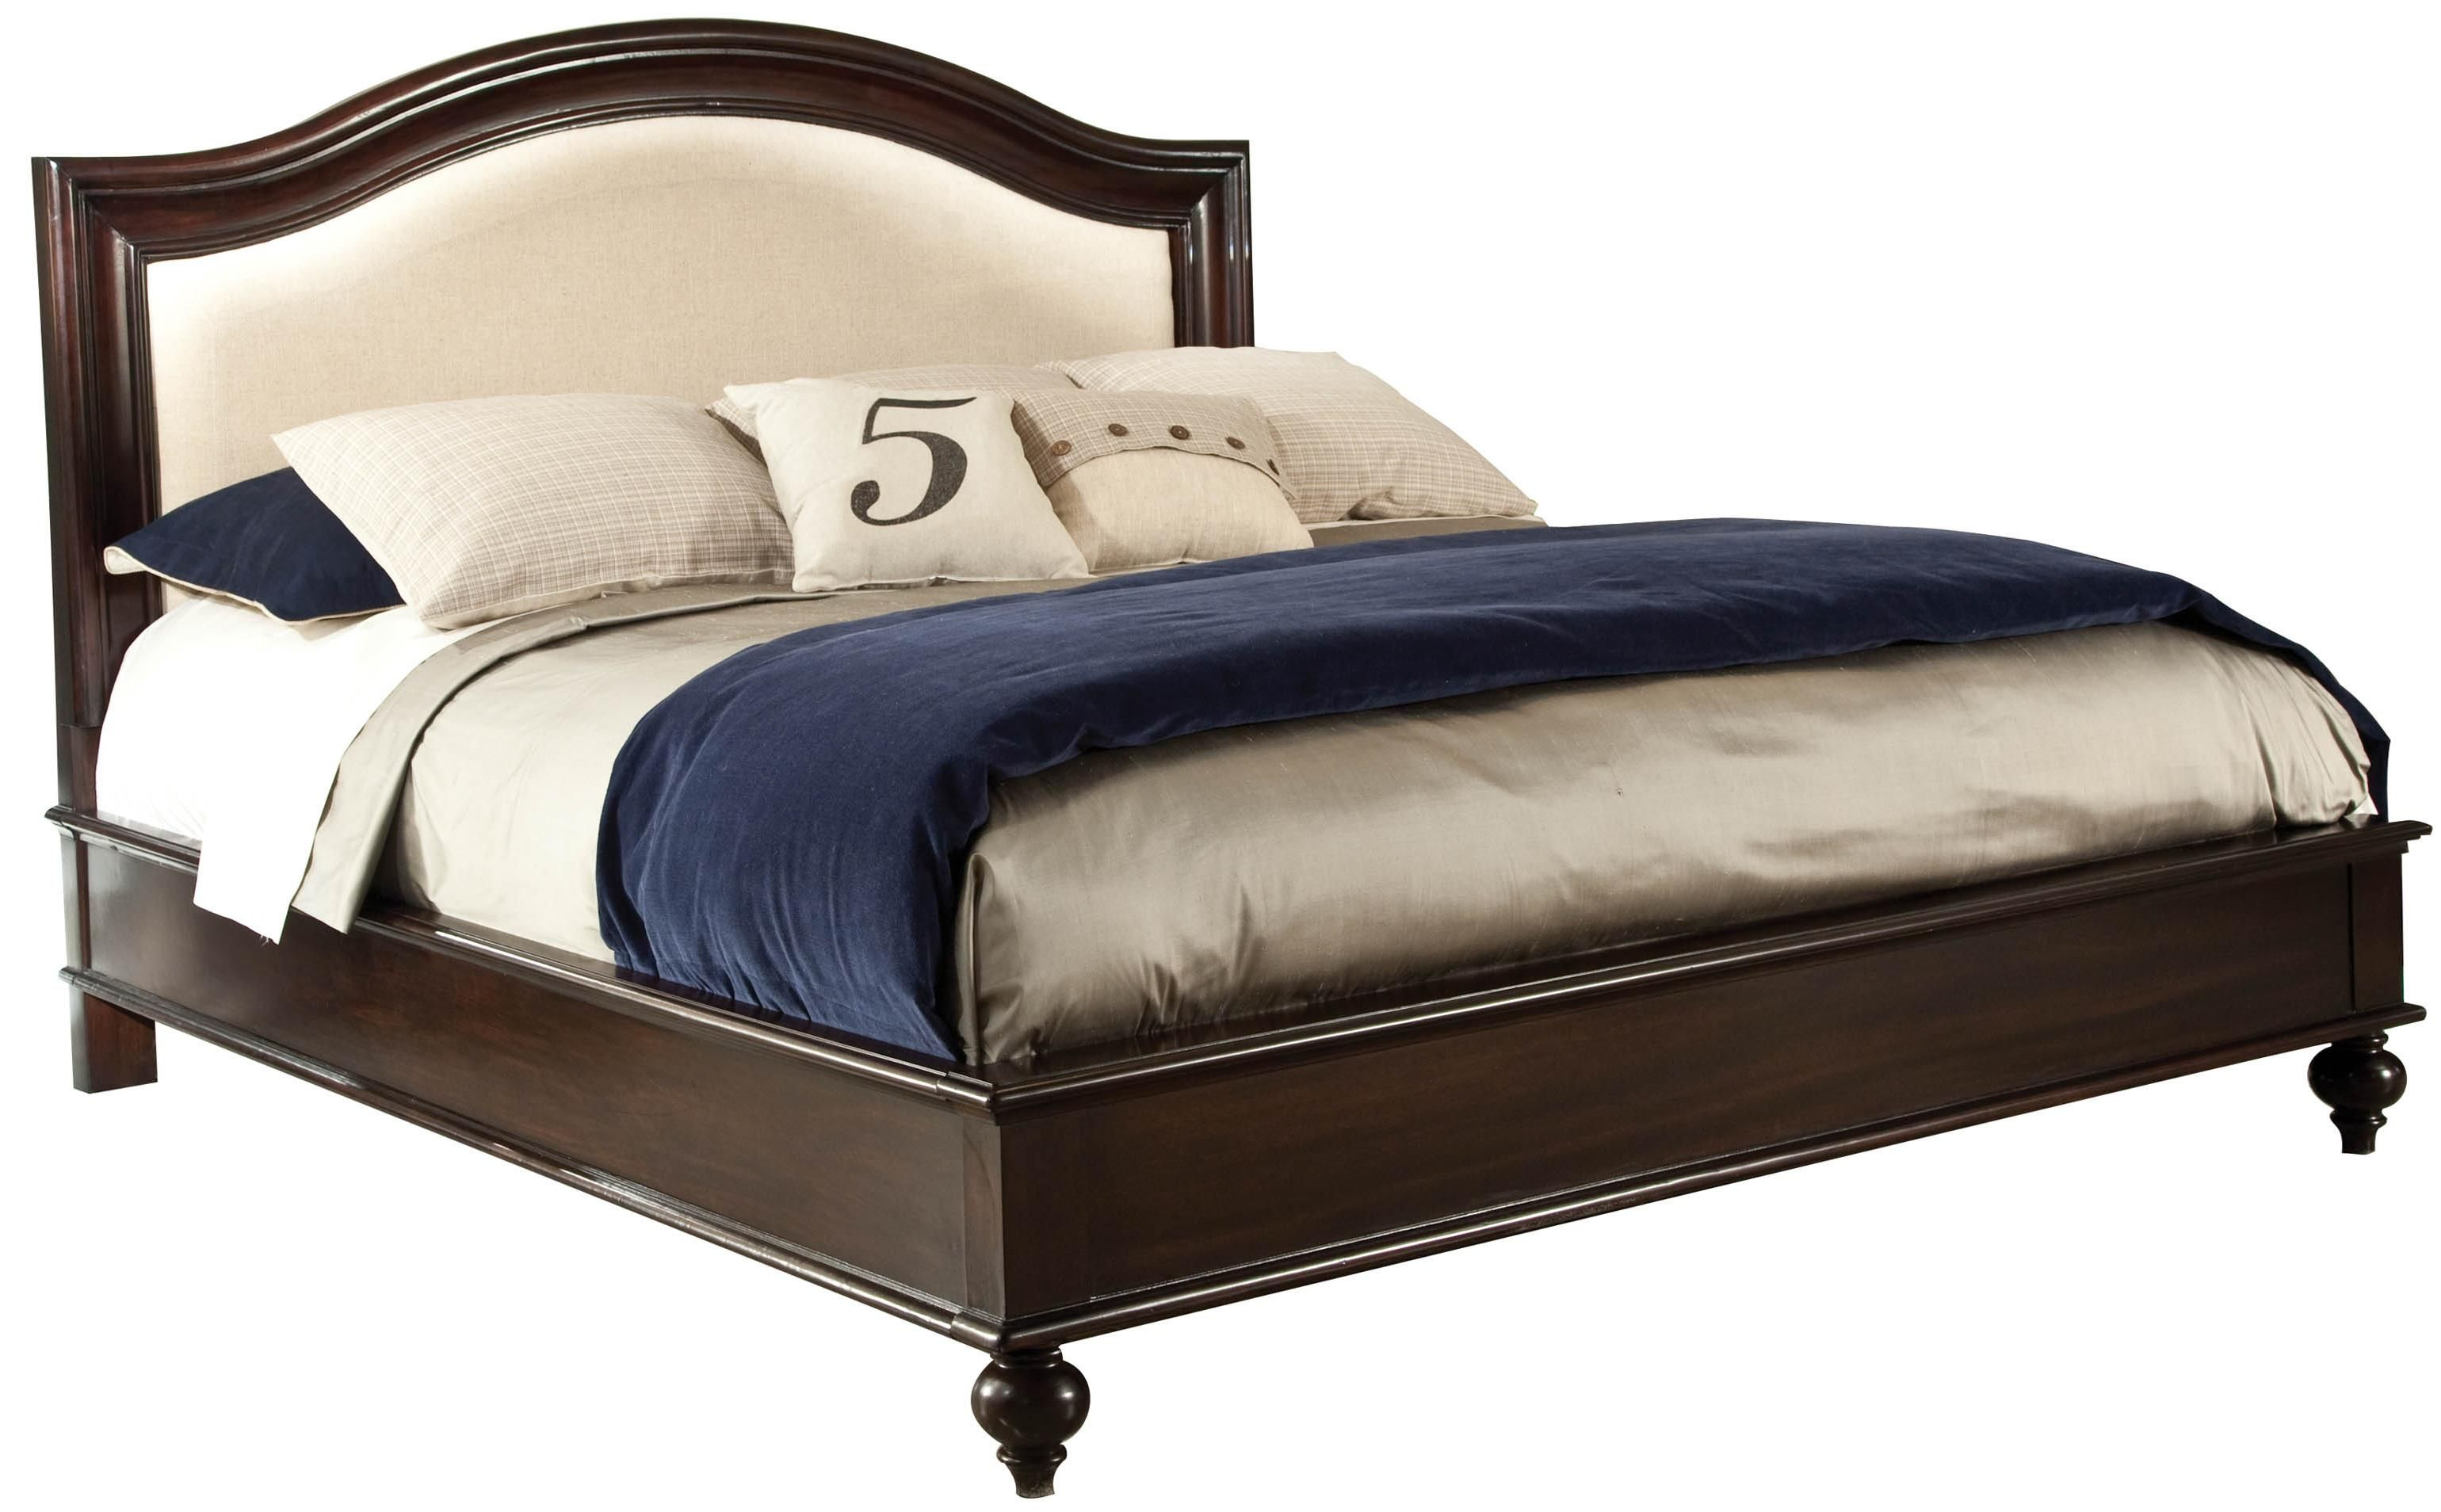 King Upholstered Panel Bed Mobile, Daphne, Tillmans Corner with regard to J And J Furniture Daphne Al